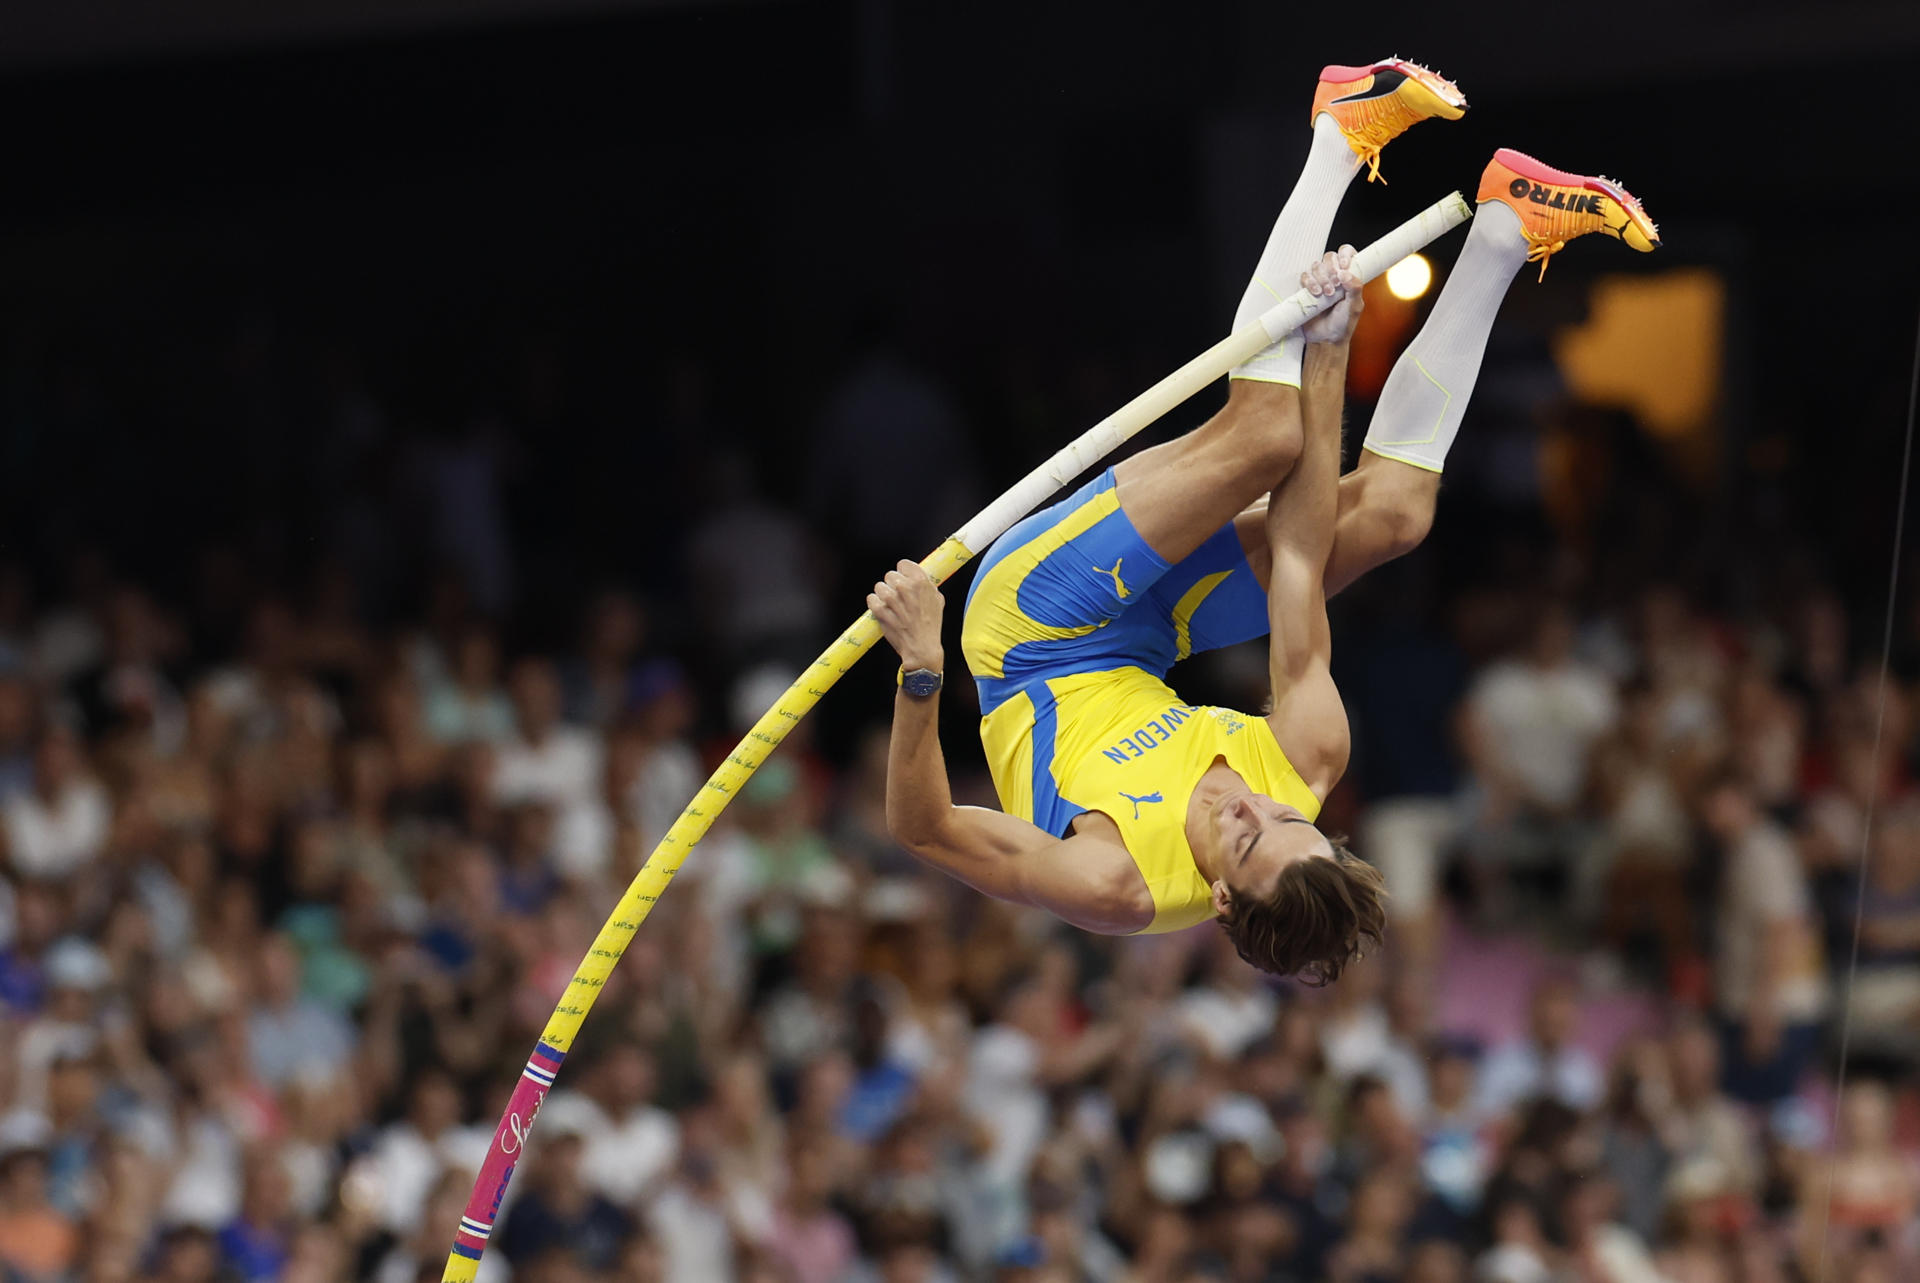 Sense por a volar. L'atleta suec Armand Duplantis ha establert un nou rècord del món en salt amb perxa